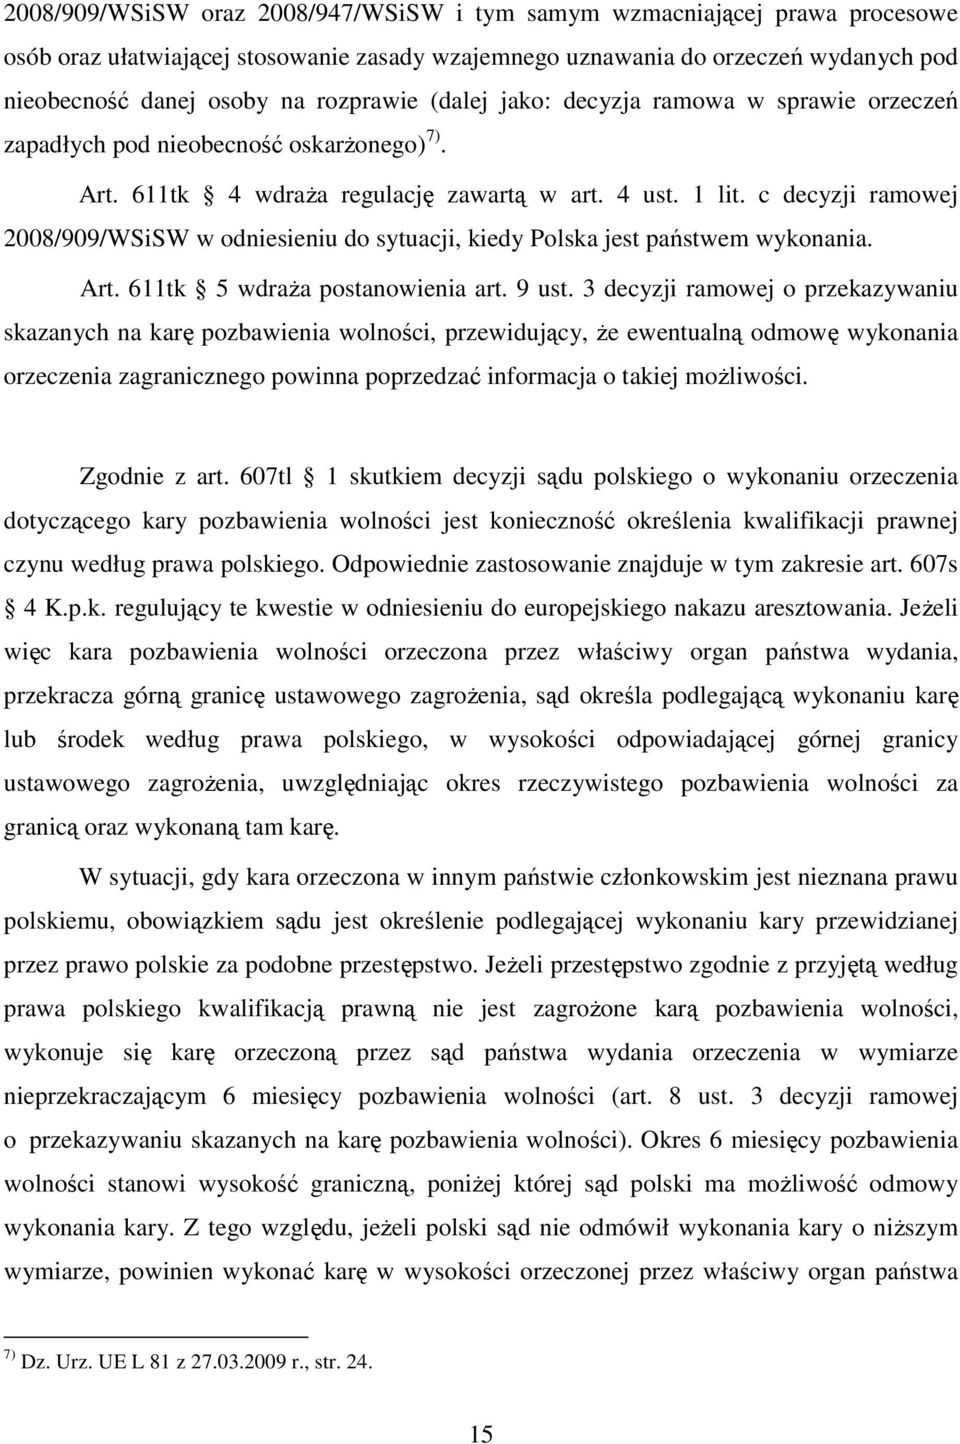 c decyzji ramowej 2008/909/WSiSW w odniesieniu do sytuacji, kiedy Polska jest państwem wykonania. Art. 611tk 5 wdraża postanowienia art. 9 ust.